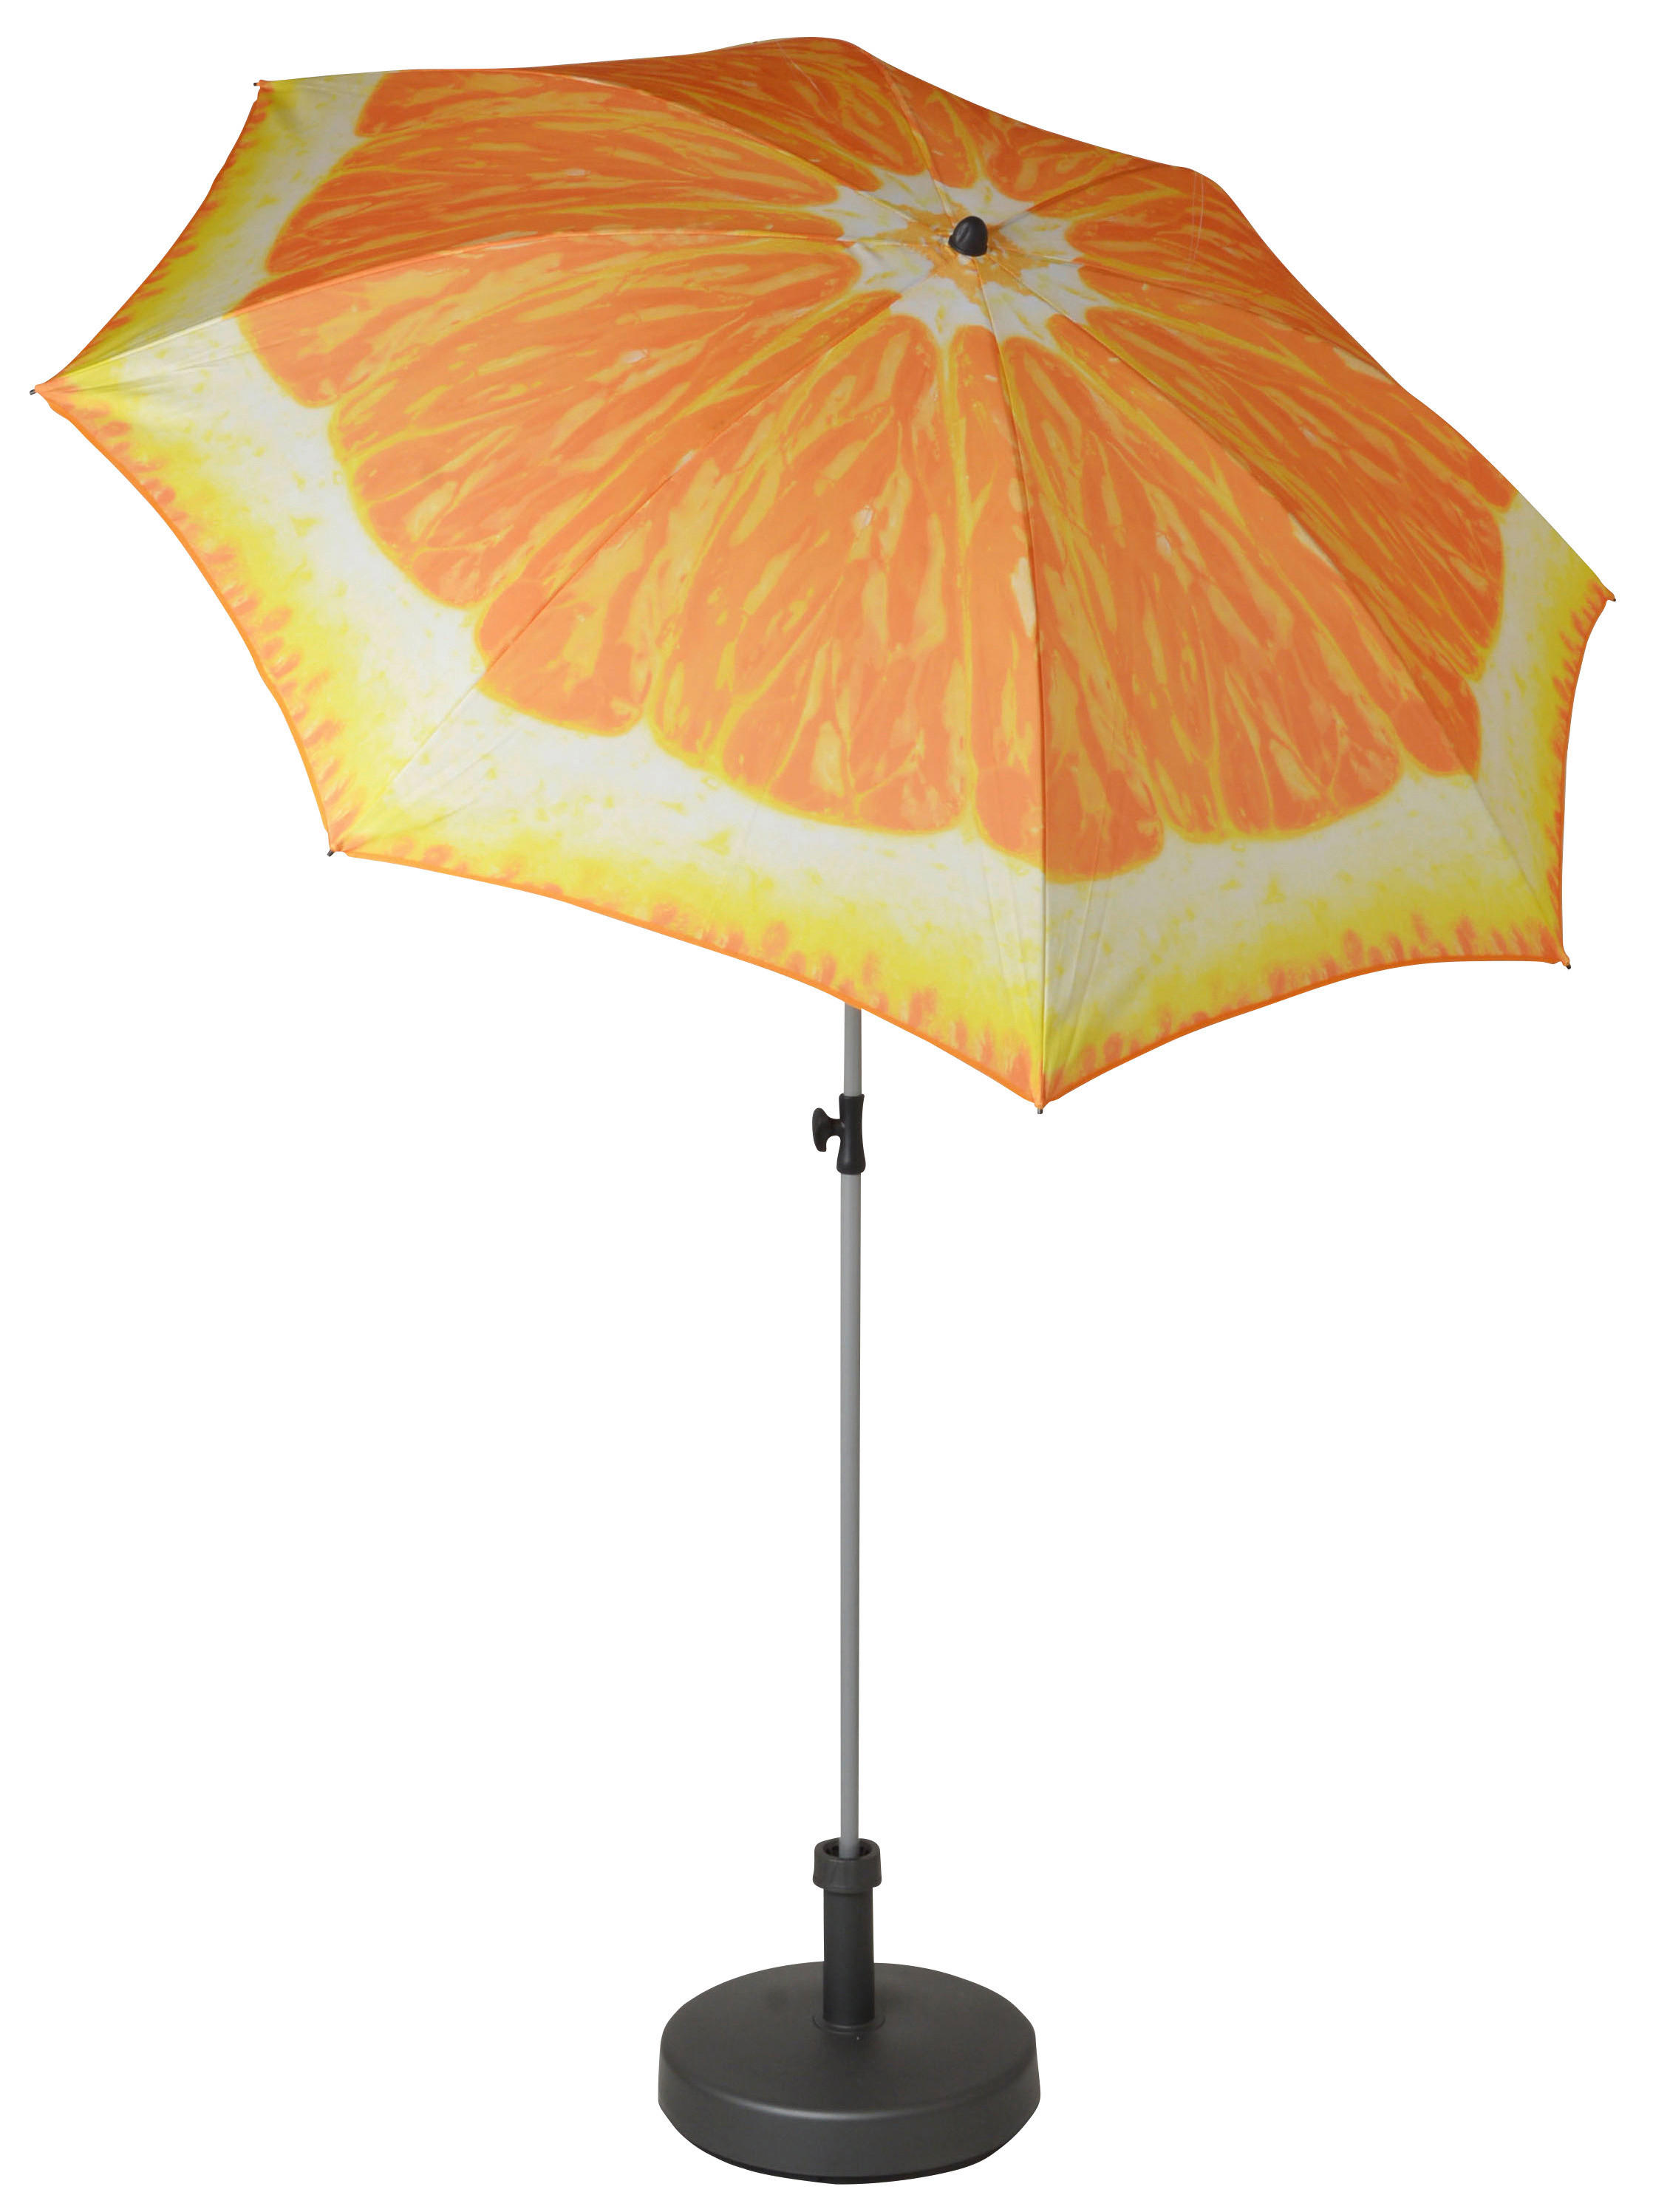 SONNENSCHIRM 200 cm Orange  - Silberfarben/Orange, Design, Textil/Metall (200/200cm) - Doppler